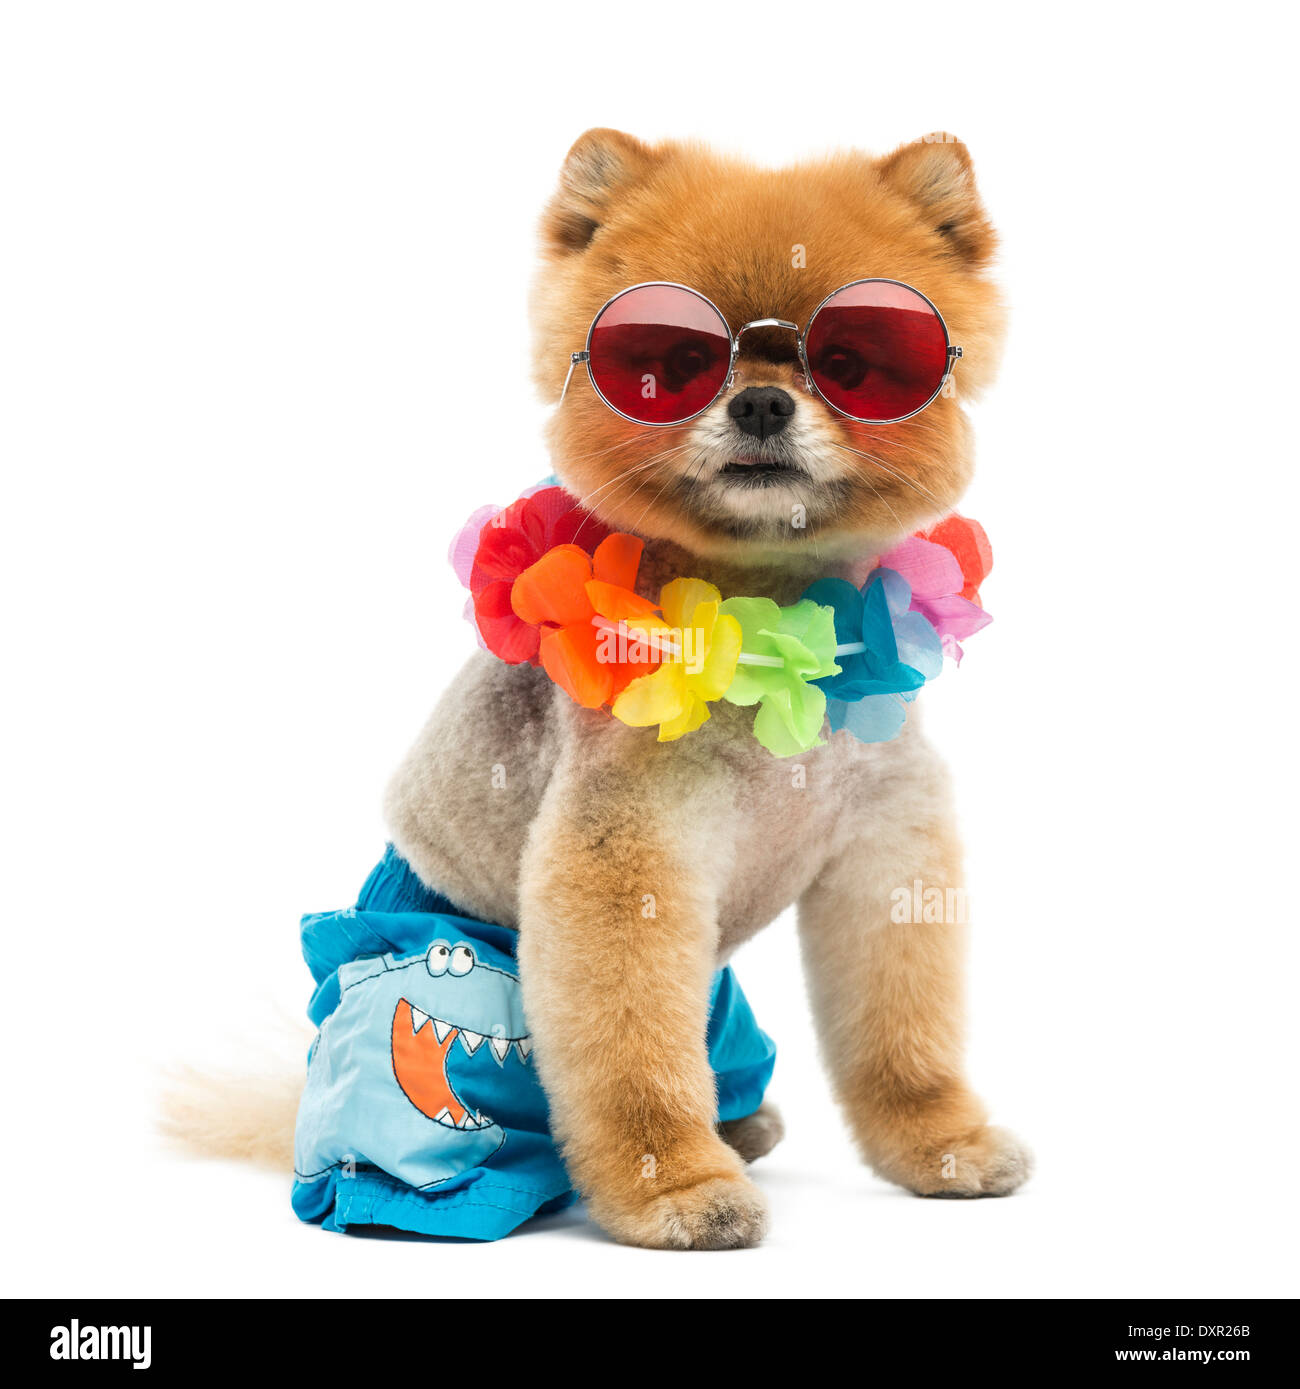 Battute di Pomerania dog sitter e indossa pantaloni corti, Hawaiian lei e occhiali da sole rosso contro lo sfondo bianco Foto Stock